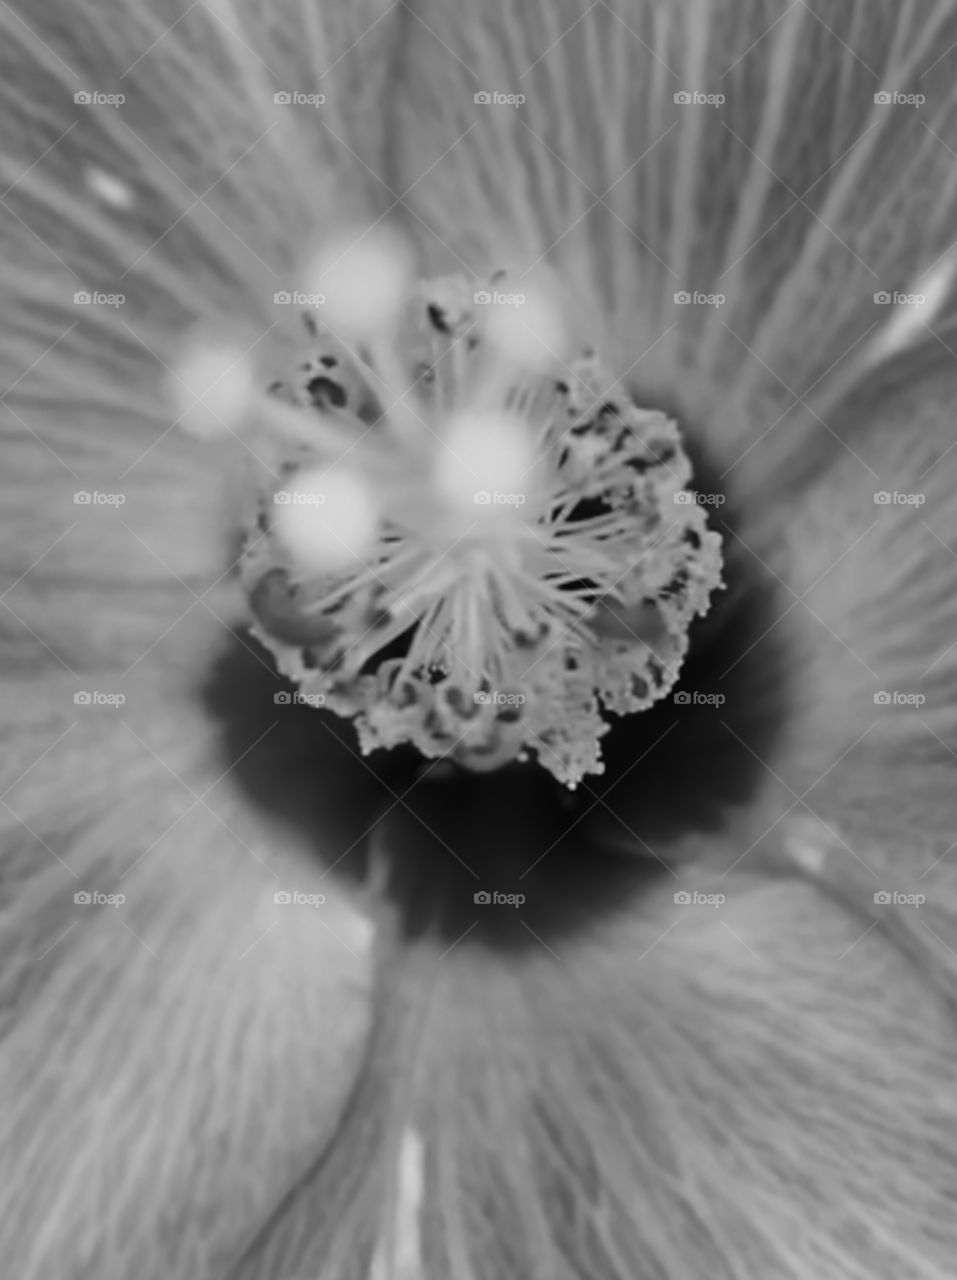 Black & White flower macros 